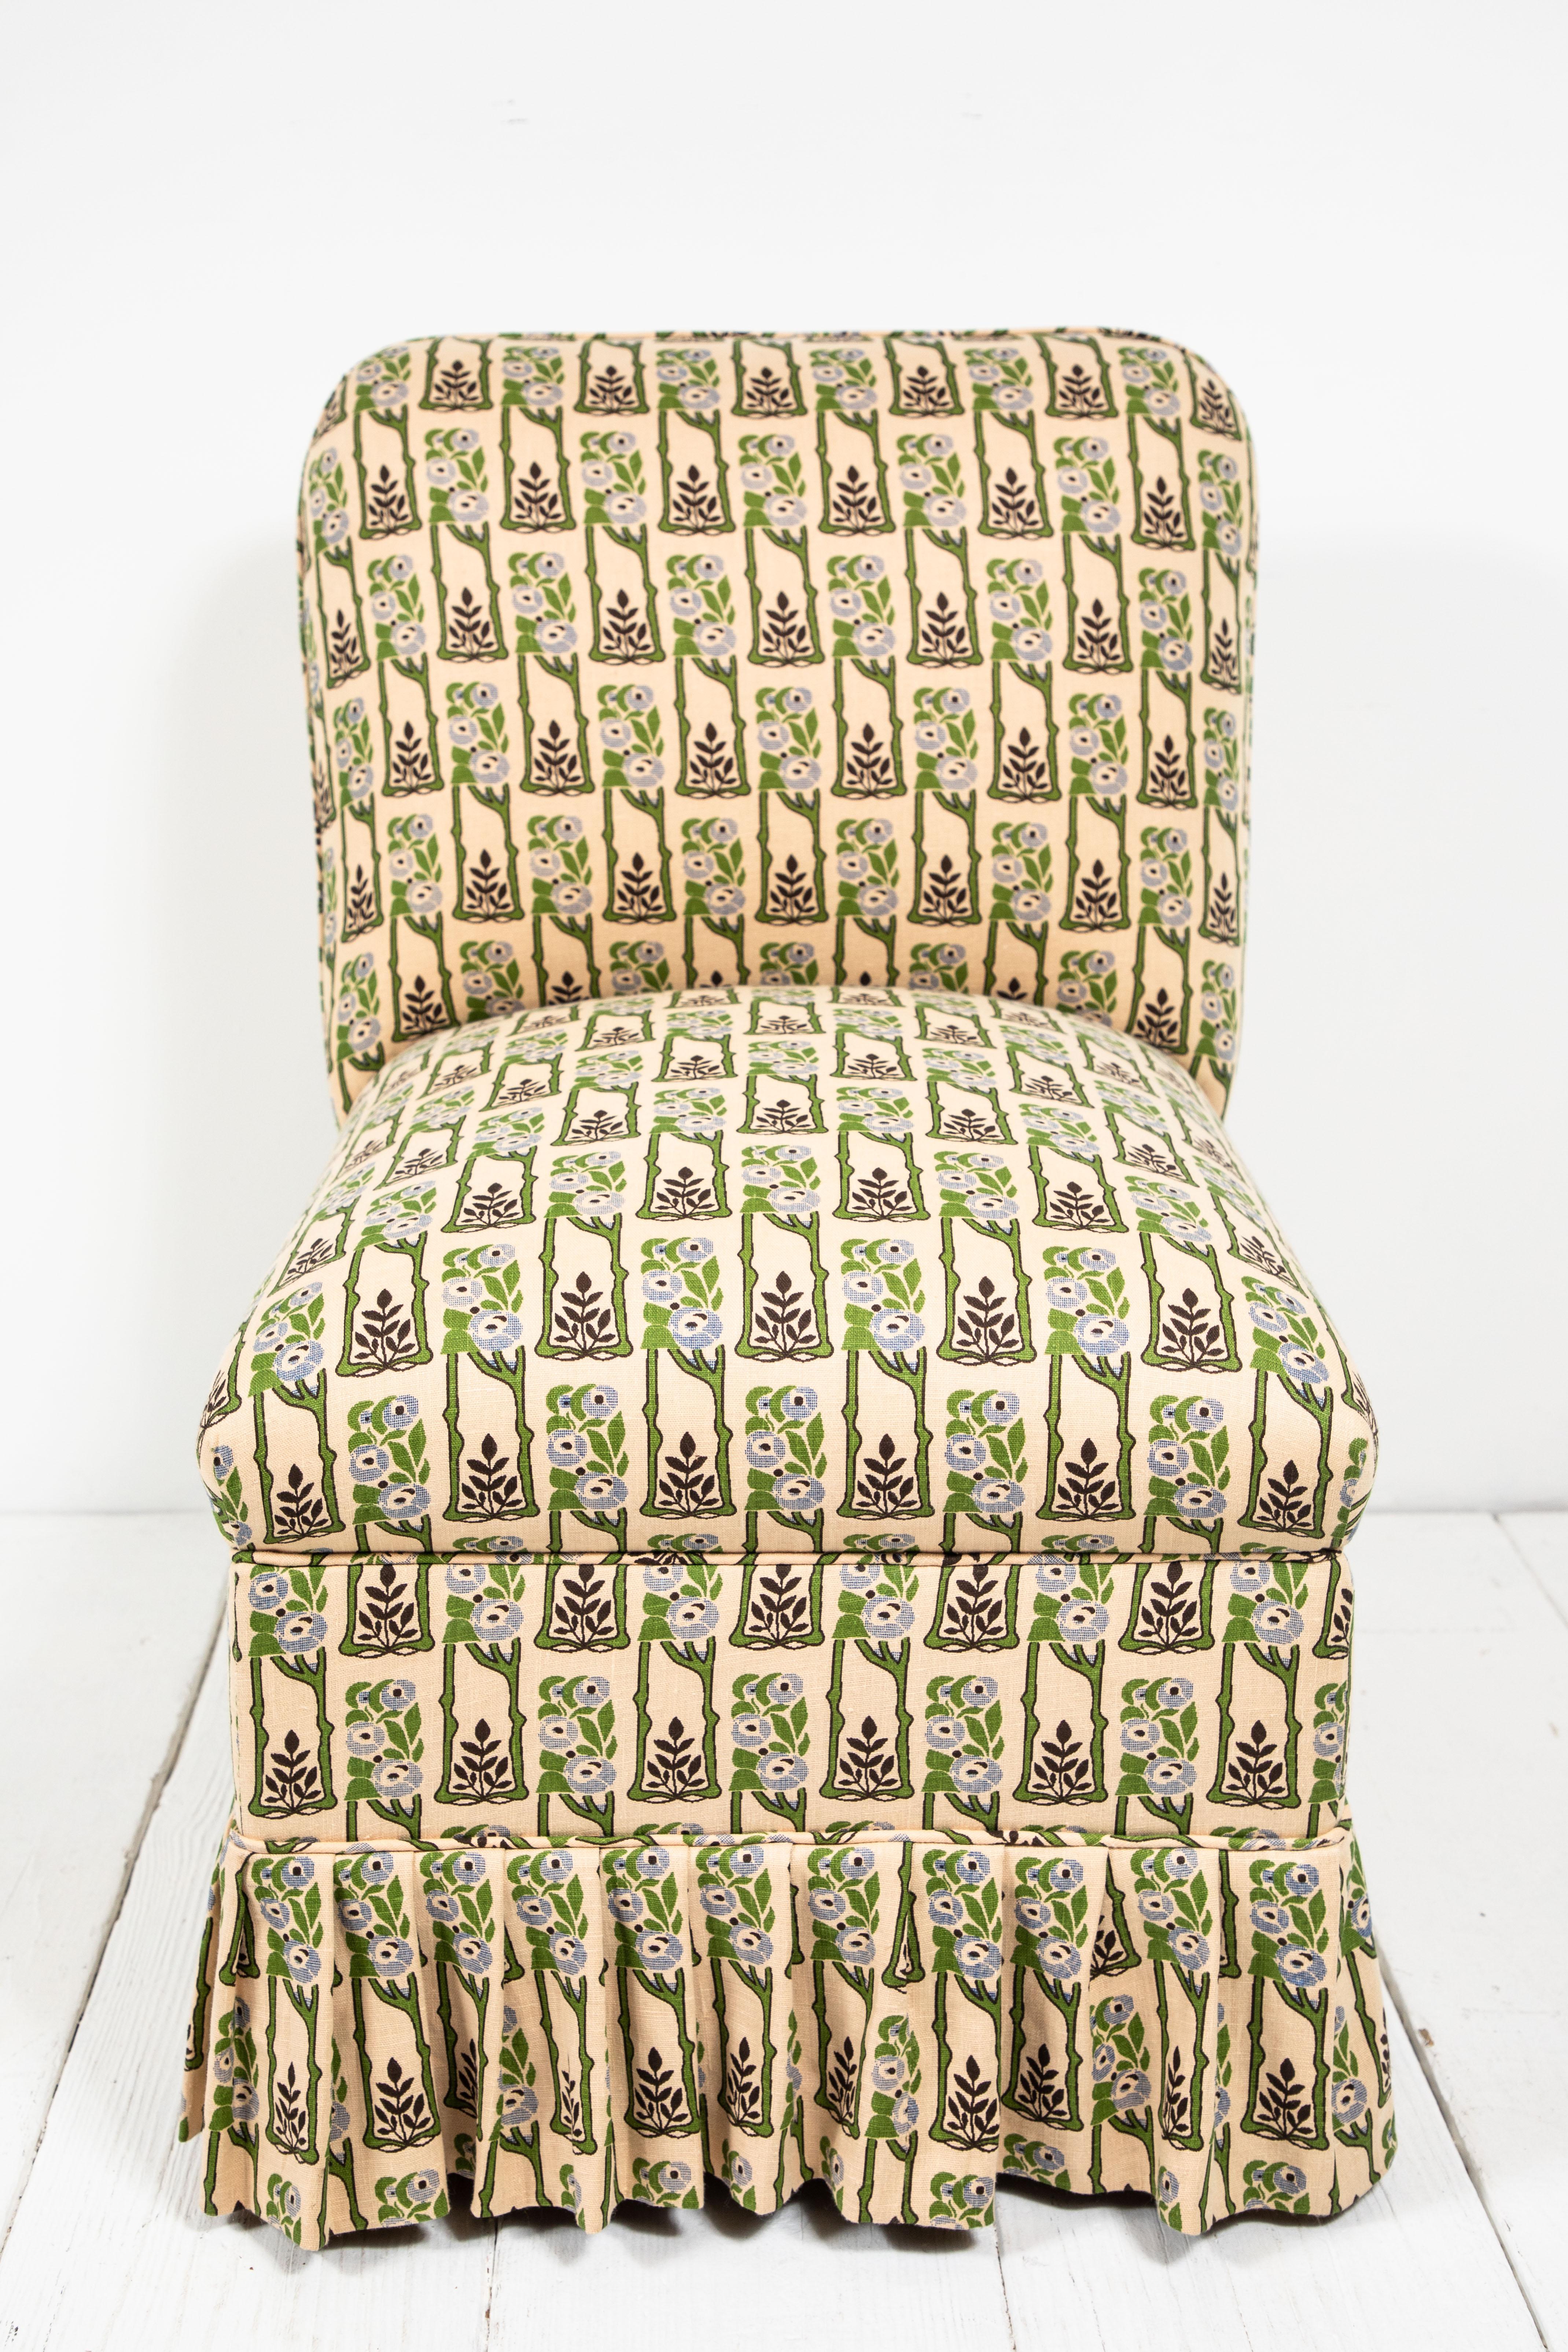 skirted slipper chair